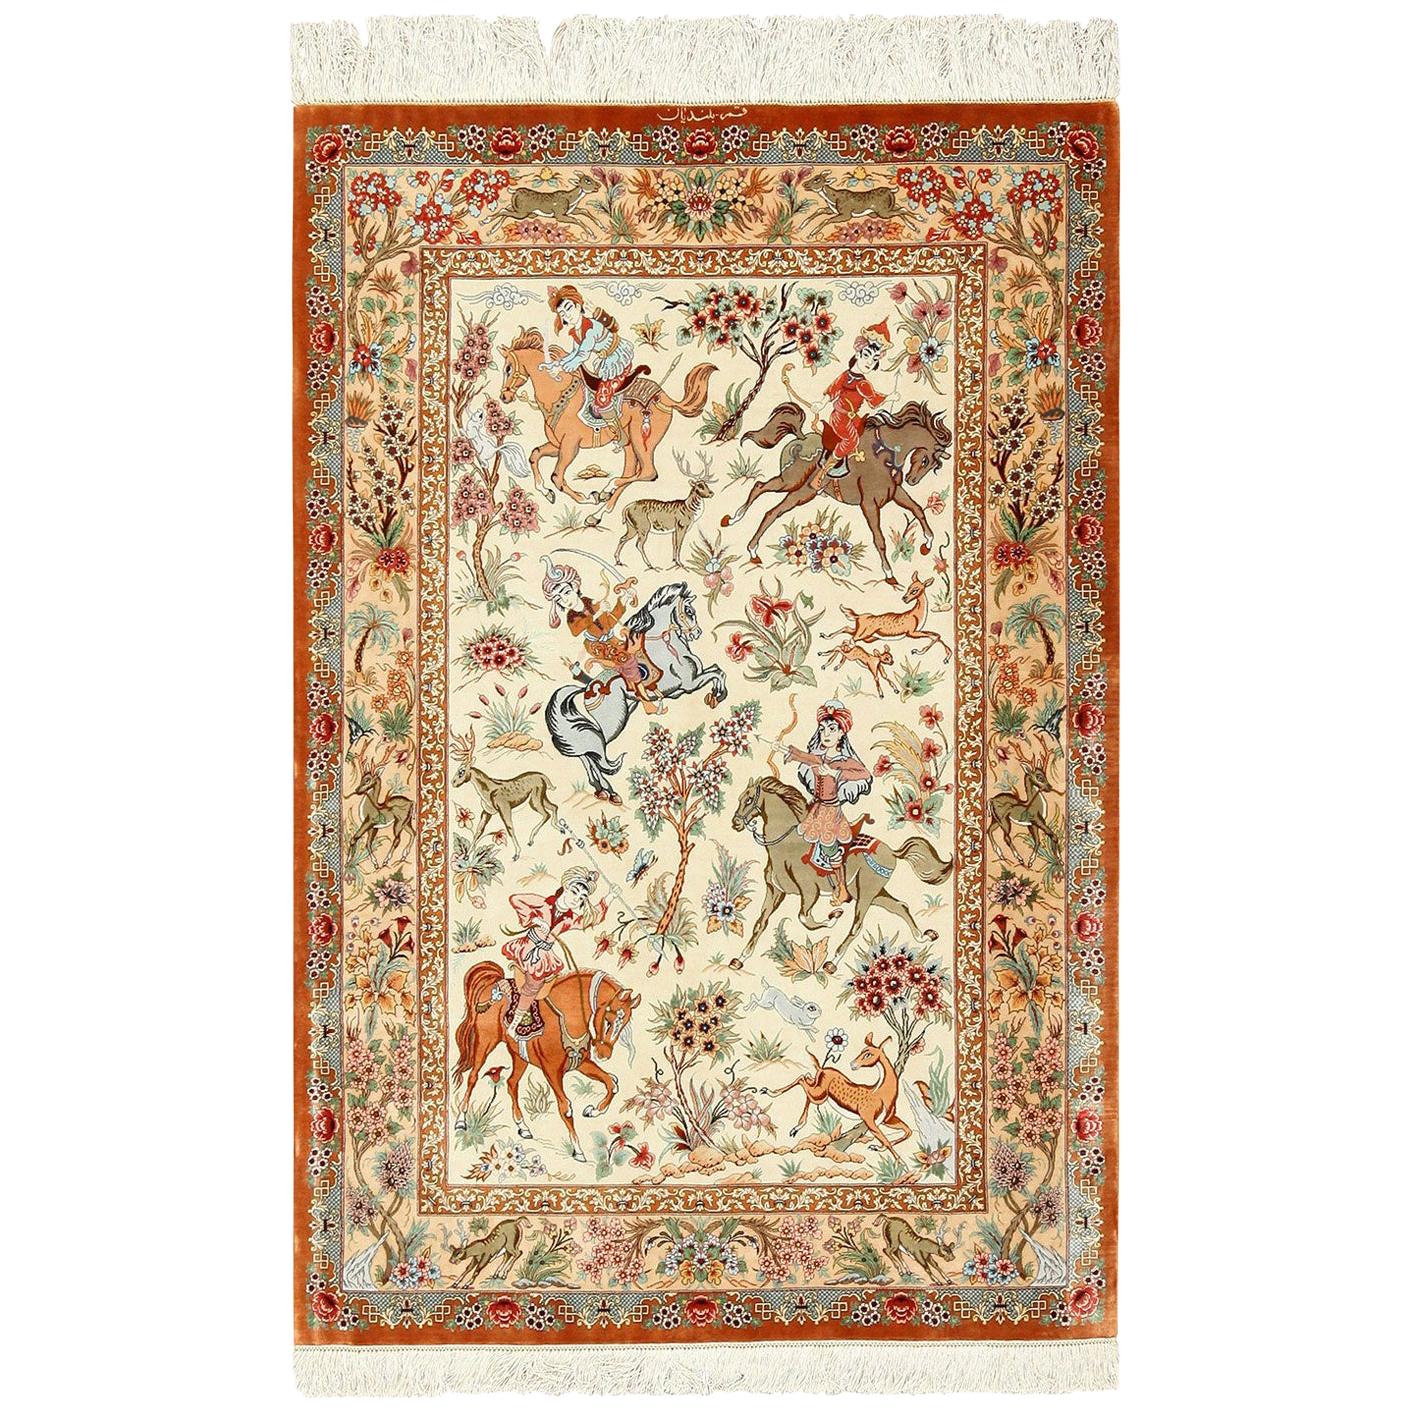 Tapis persan de scène de chasse Qum en soie. 3 pieds 5 po. x 5 pieds 1 po. 